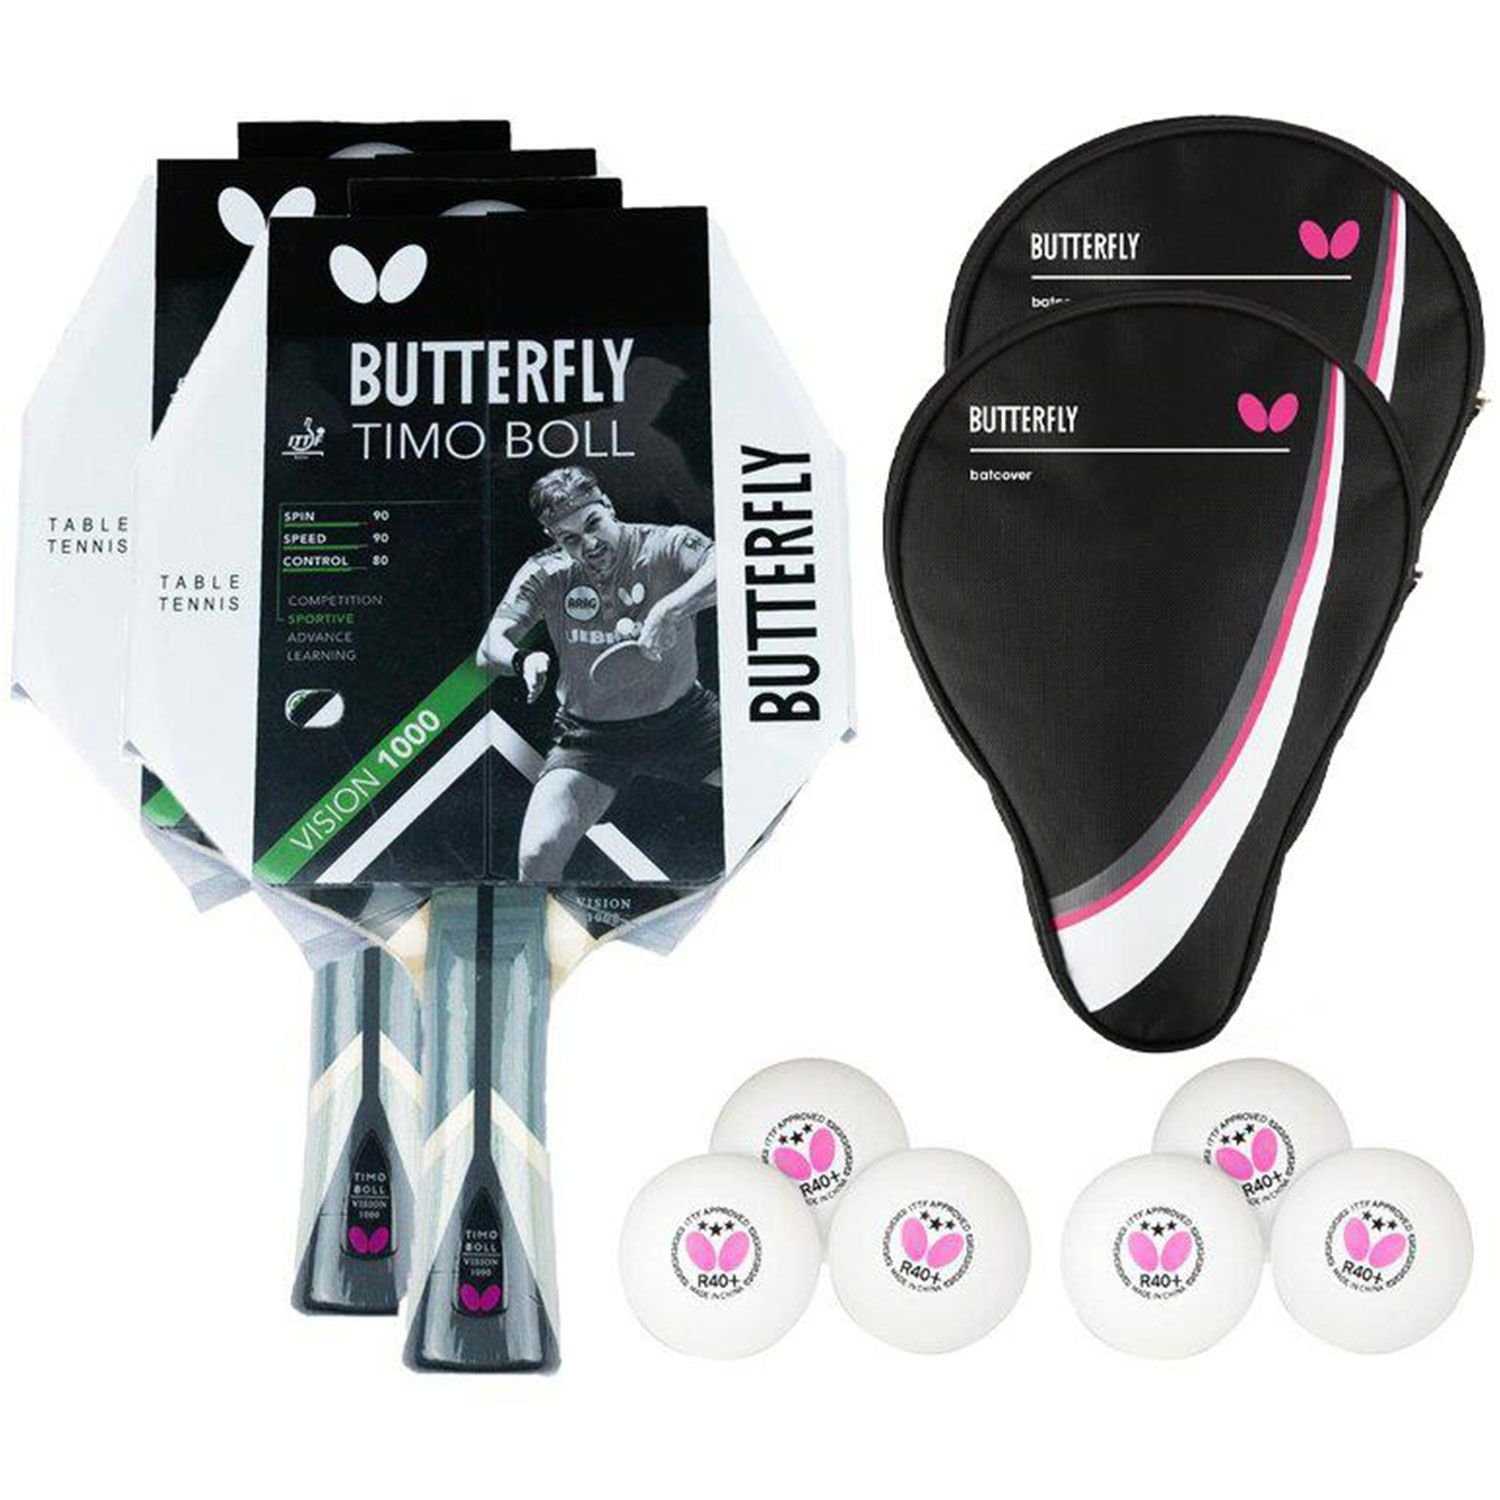 Butterfly Tischtennisschläger 2x Timo Boll Vision 1000 + 2x Drive Case 1 + Bälle, Tischtennis Schläger Set Tischtennisset Table Tennis Bat Racket